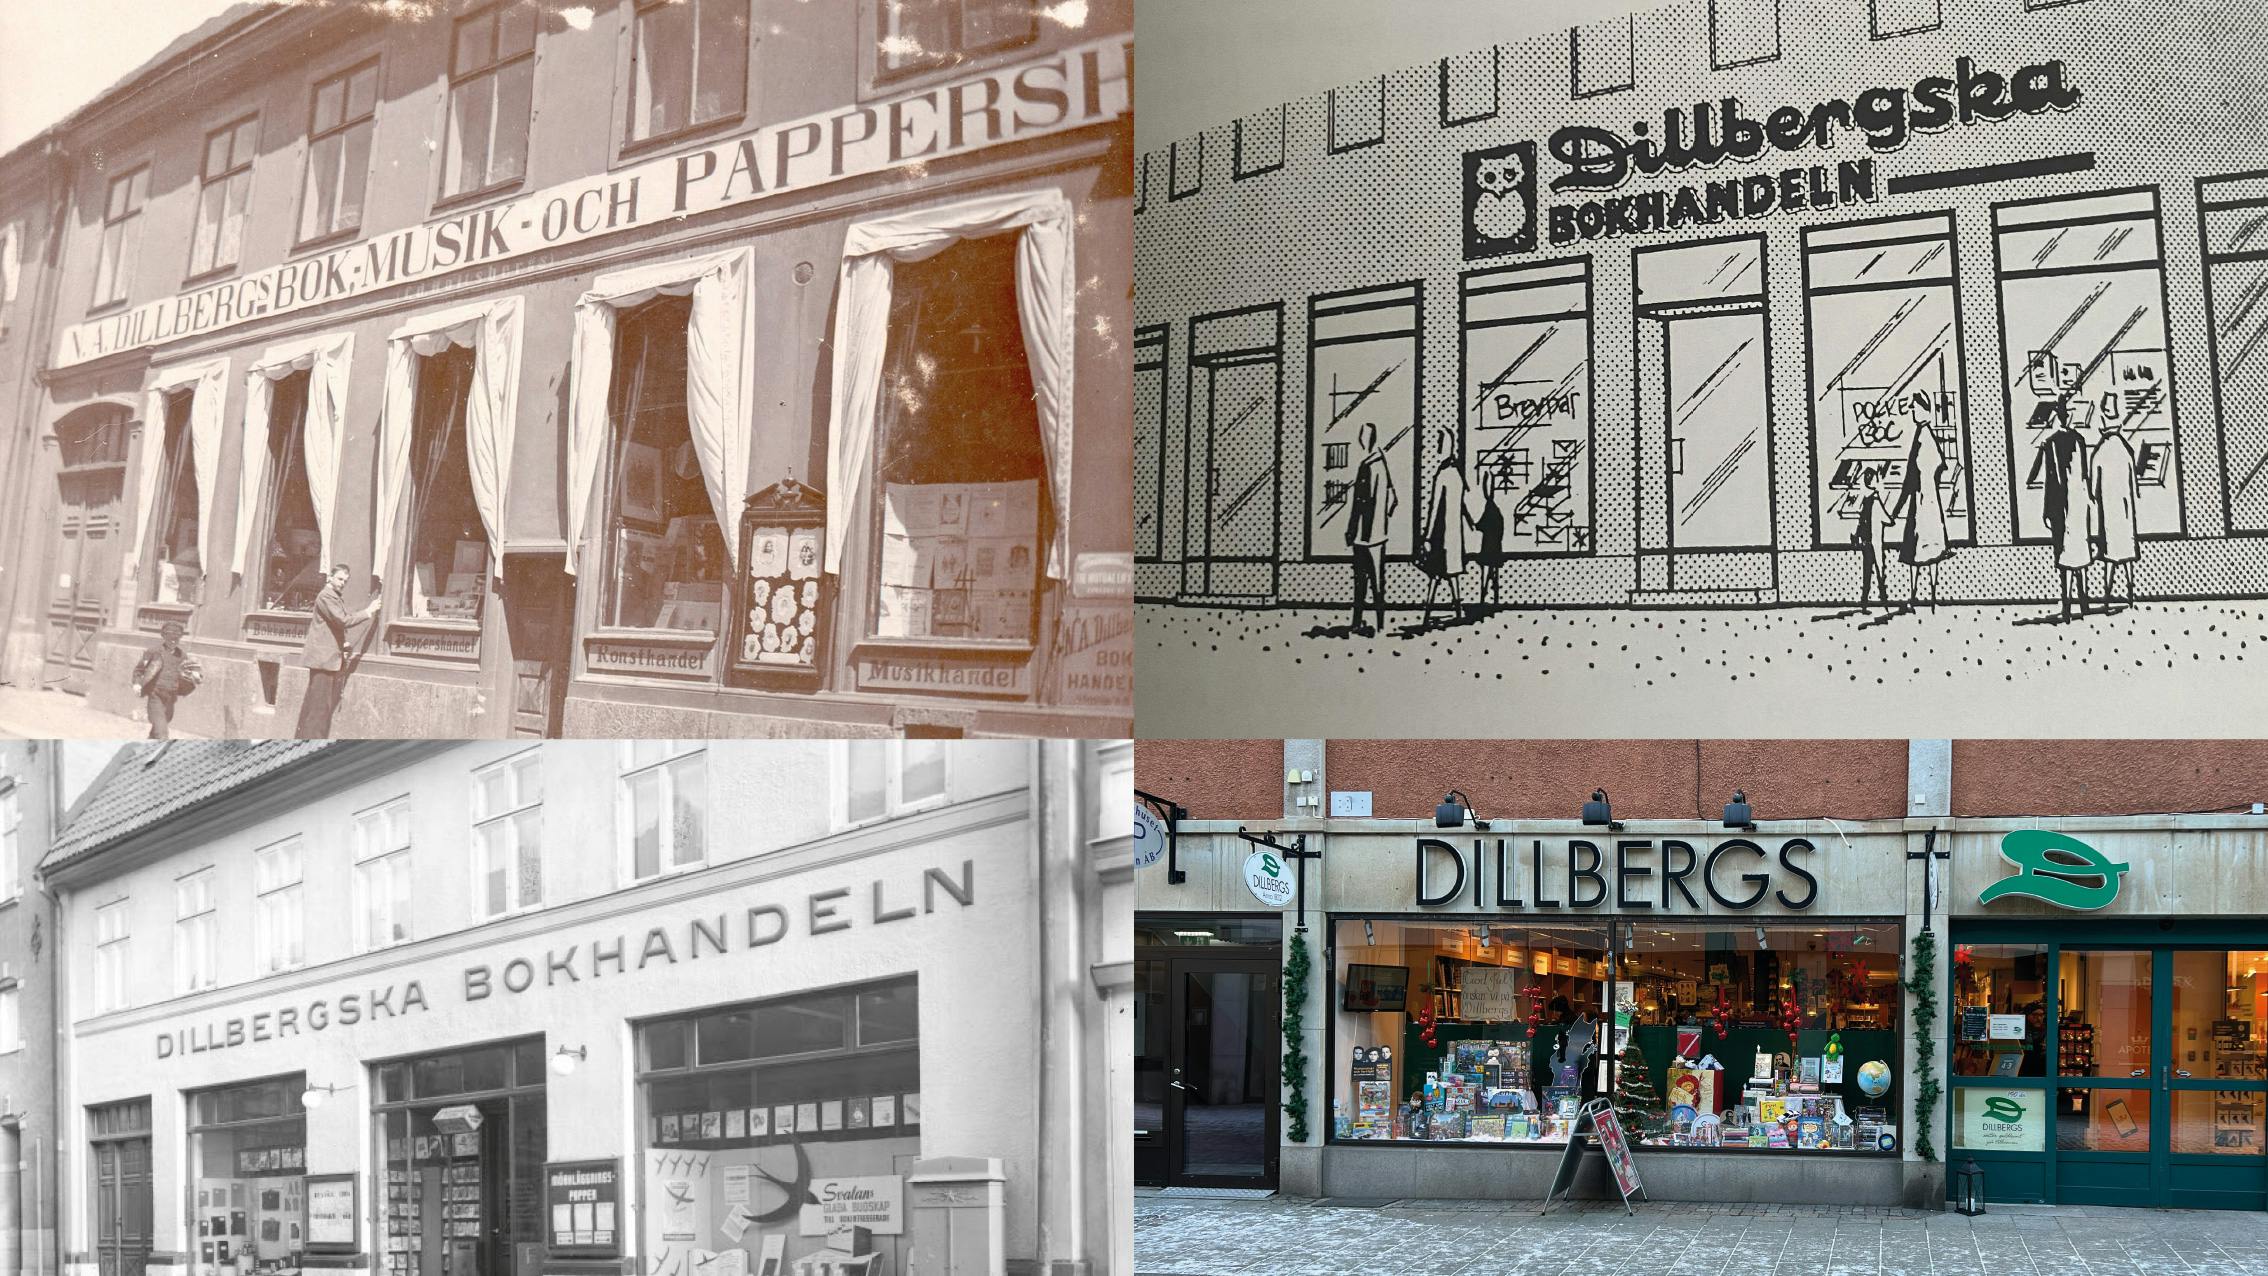 Dillbergs butik genom historien